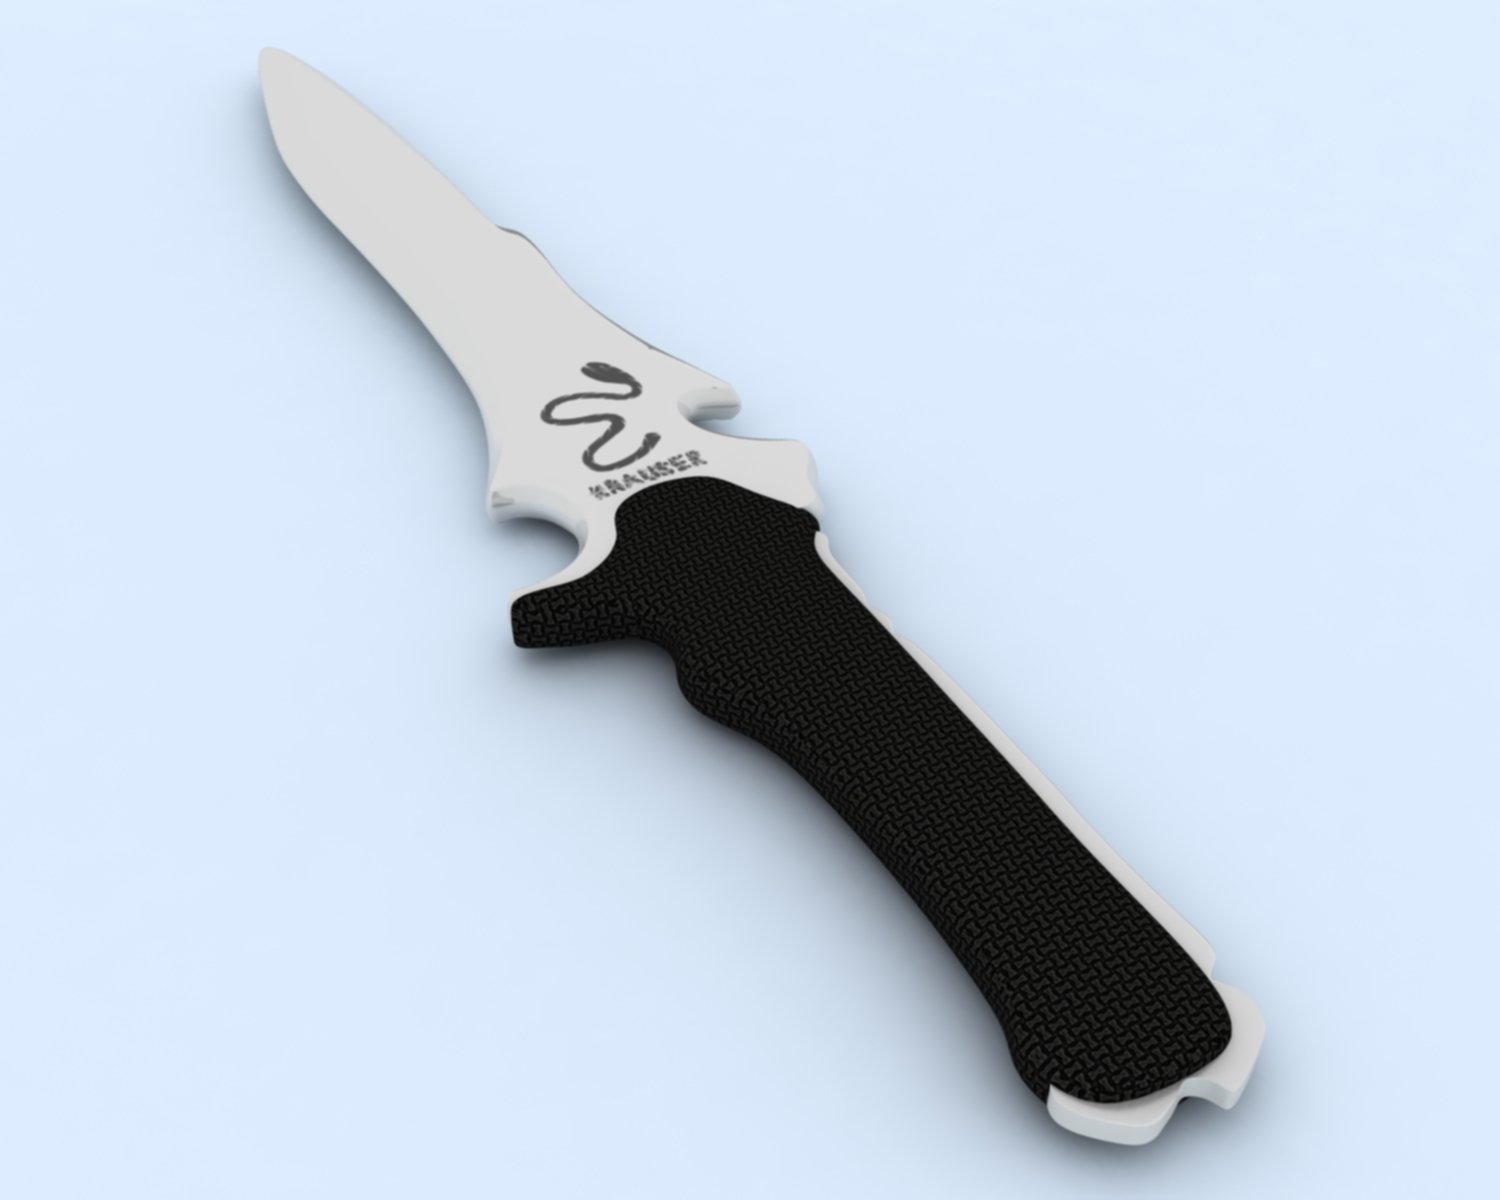 Krauser Knife by John-MacGyver on DeviantArt